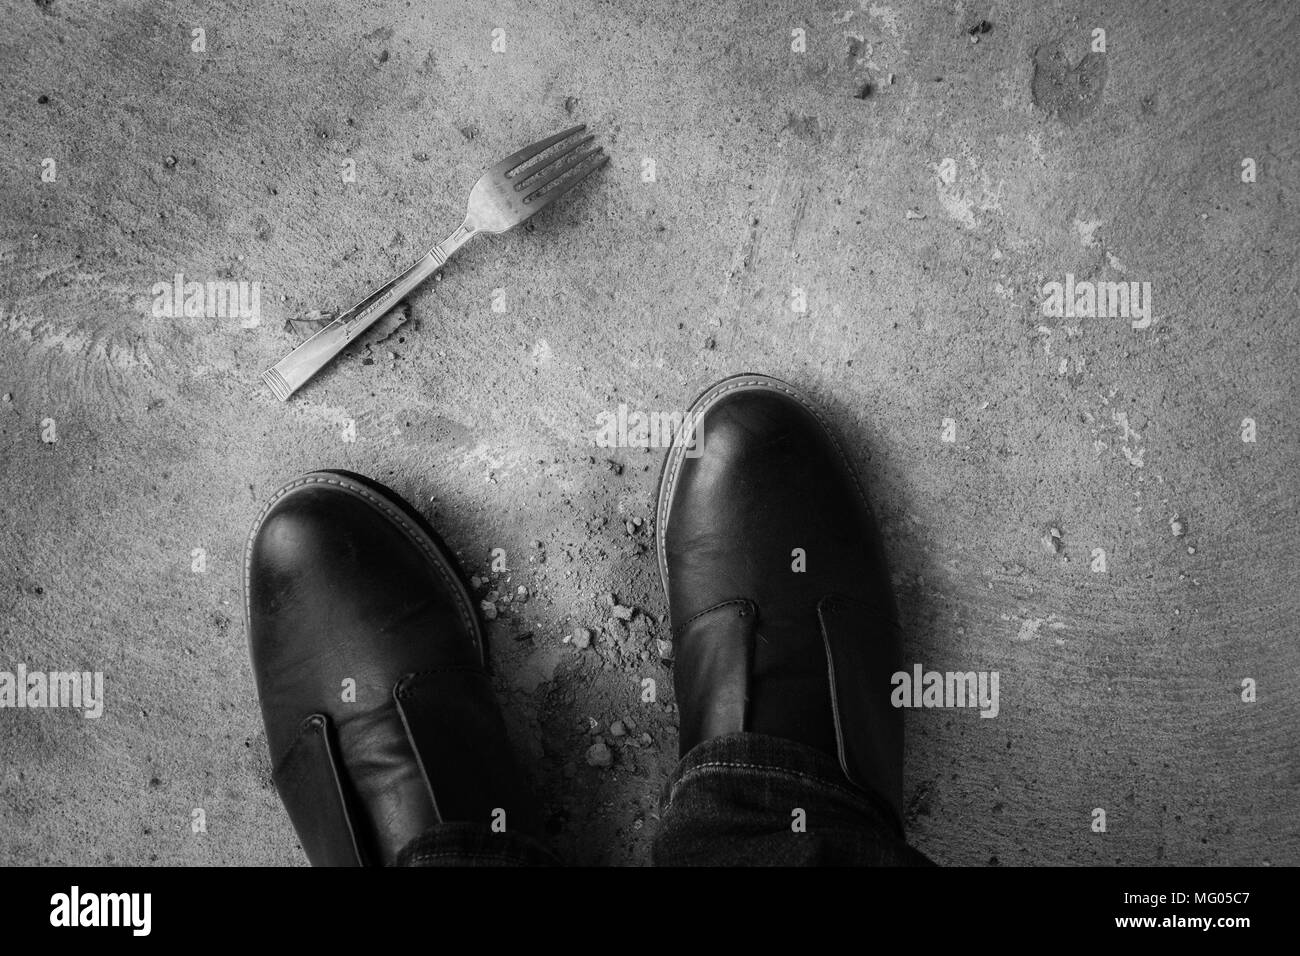 Ein schwarz-weiß Bild von einer Gabel auf dem Boden liegend in der Nähe einer Person Füße Stockfoto